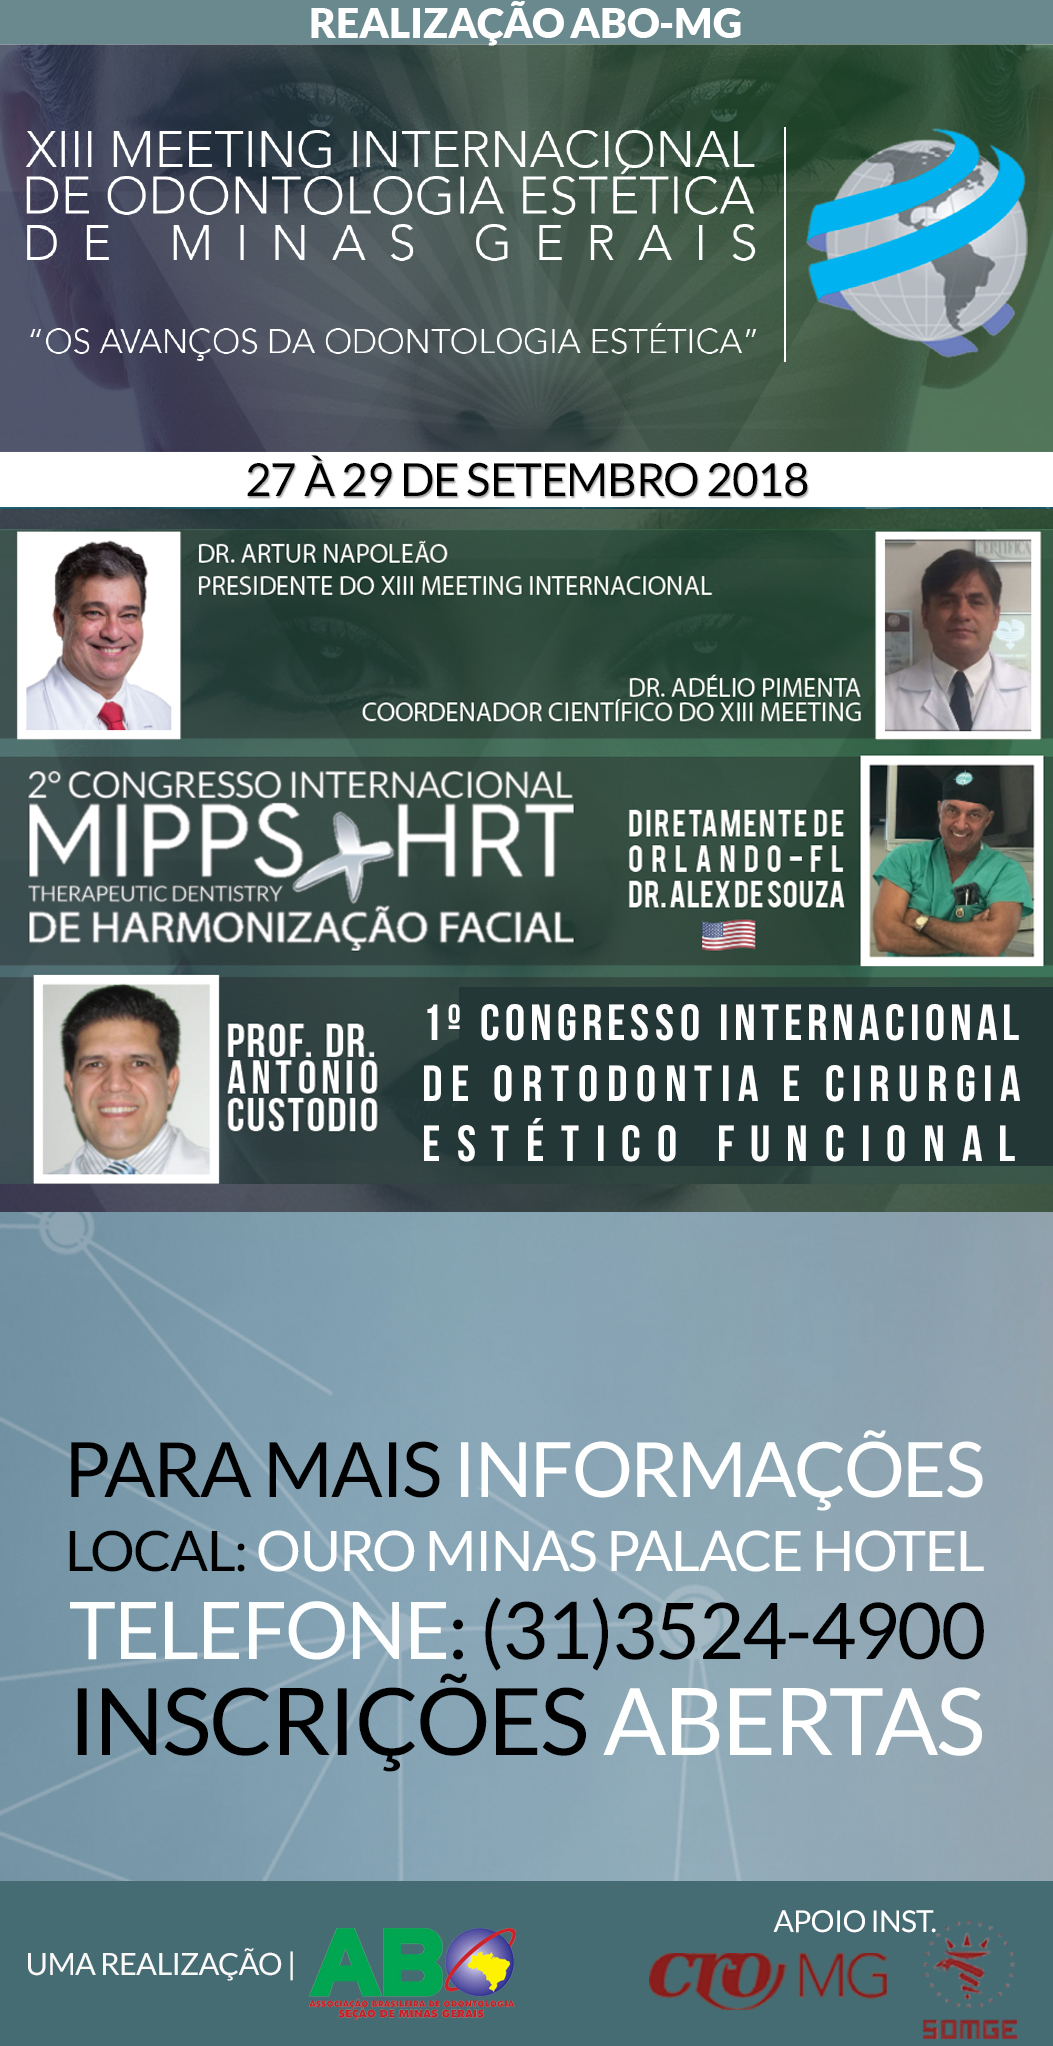 Inscrição - XIII Meeting Internacional de Odontologia Estética de Minas Gerais